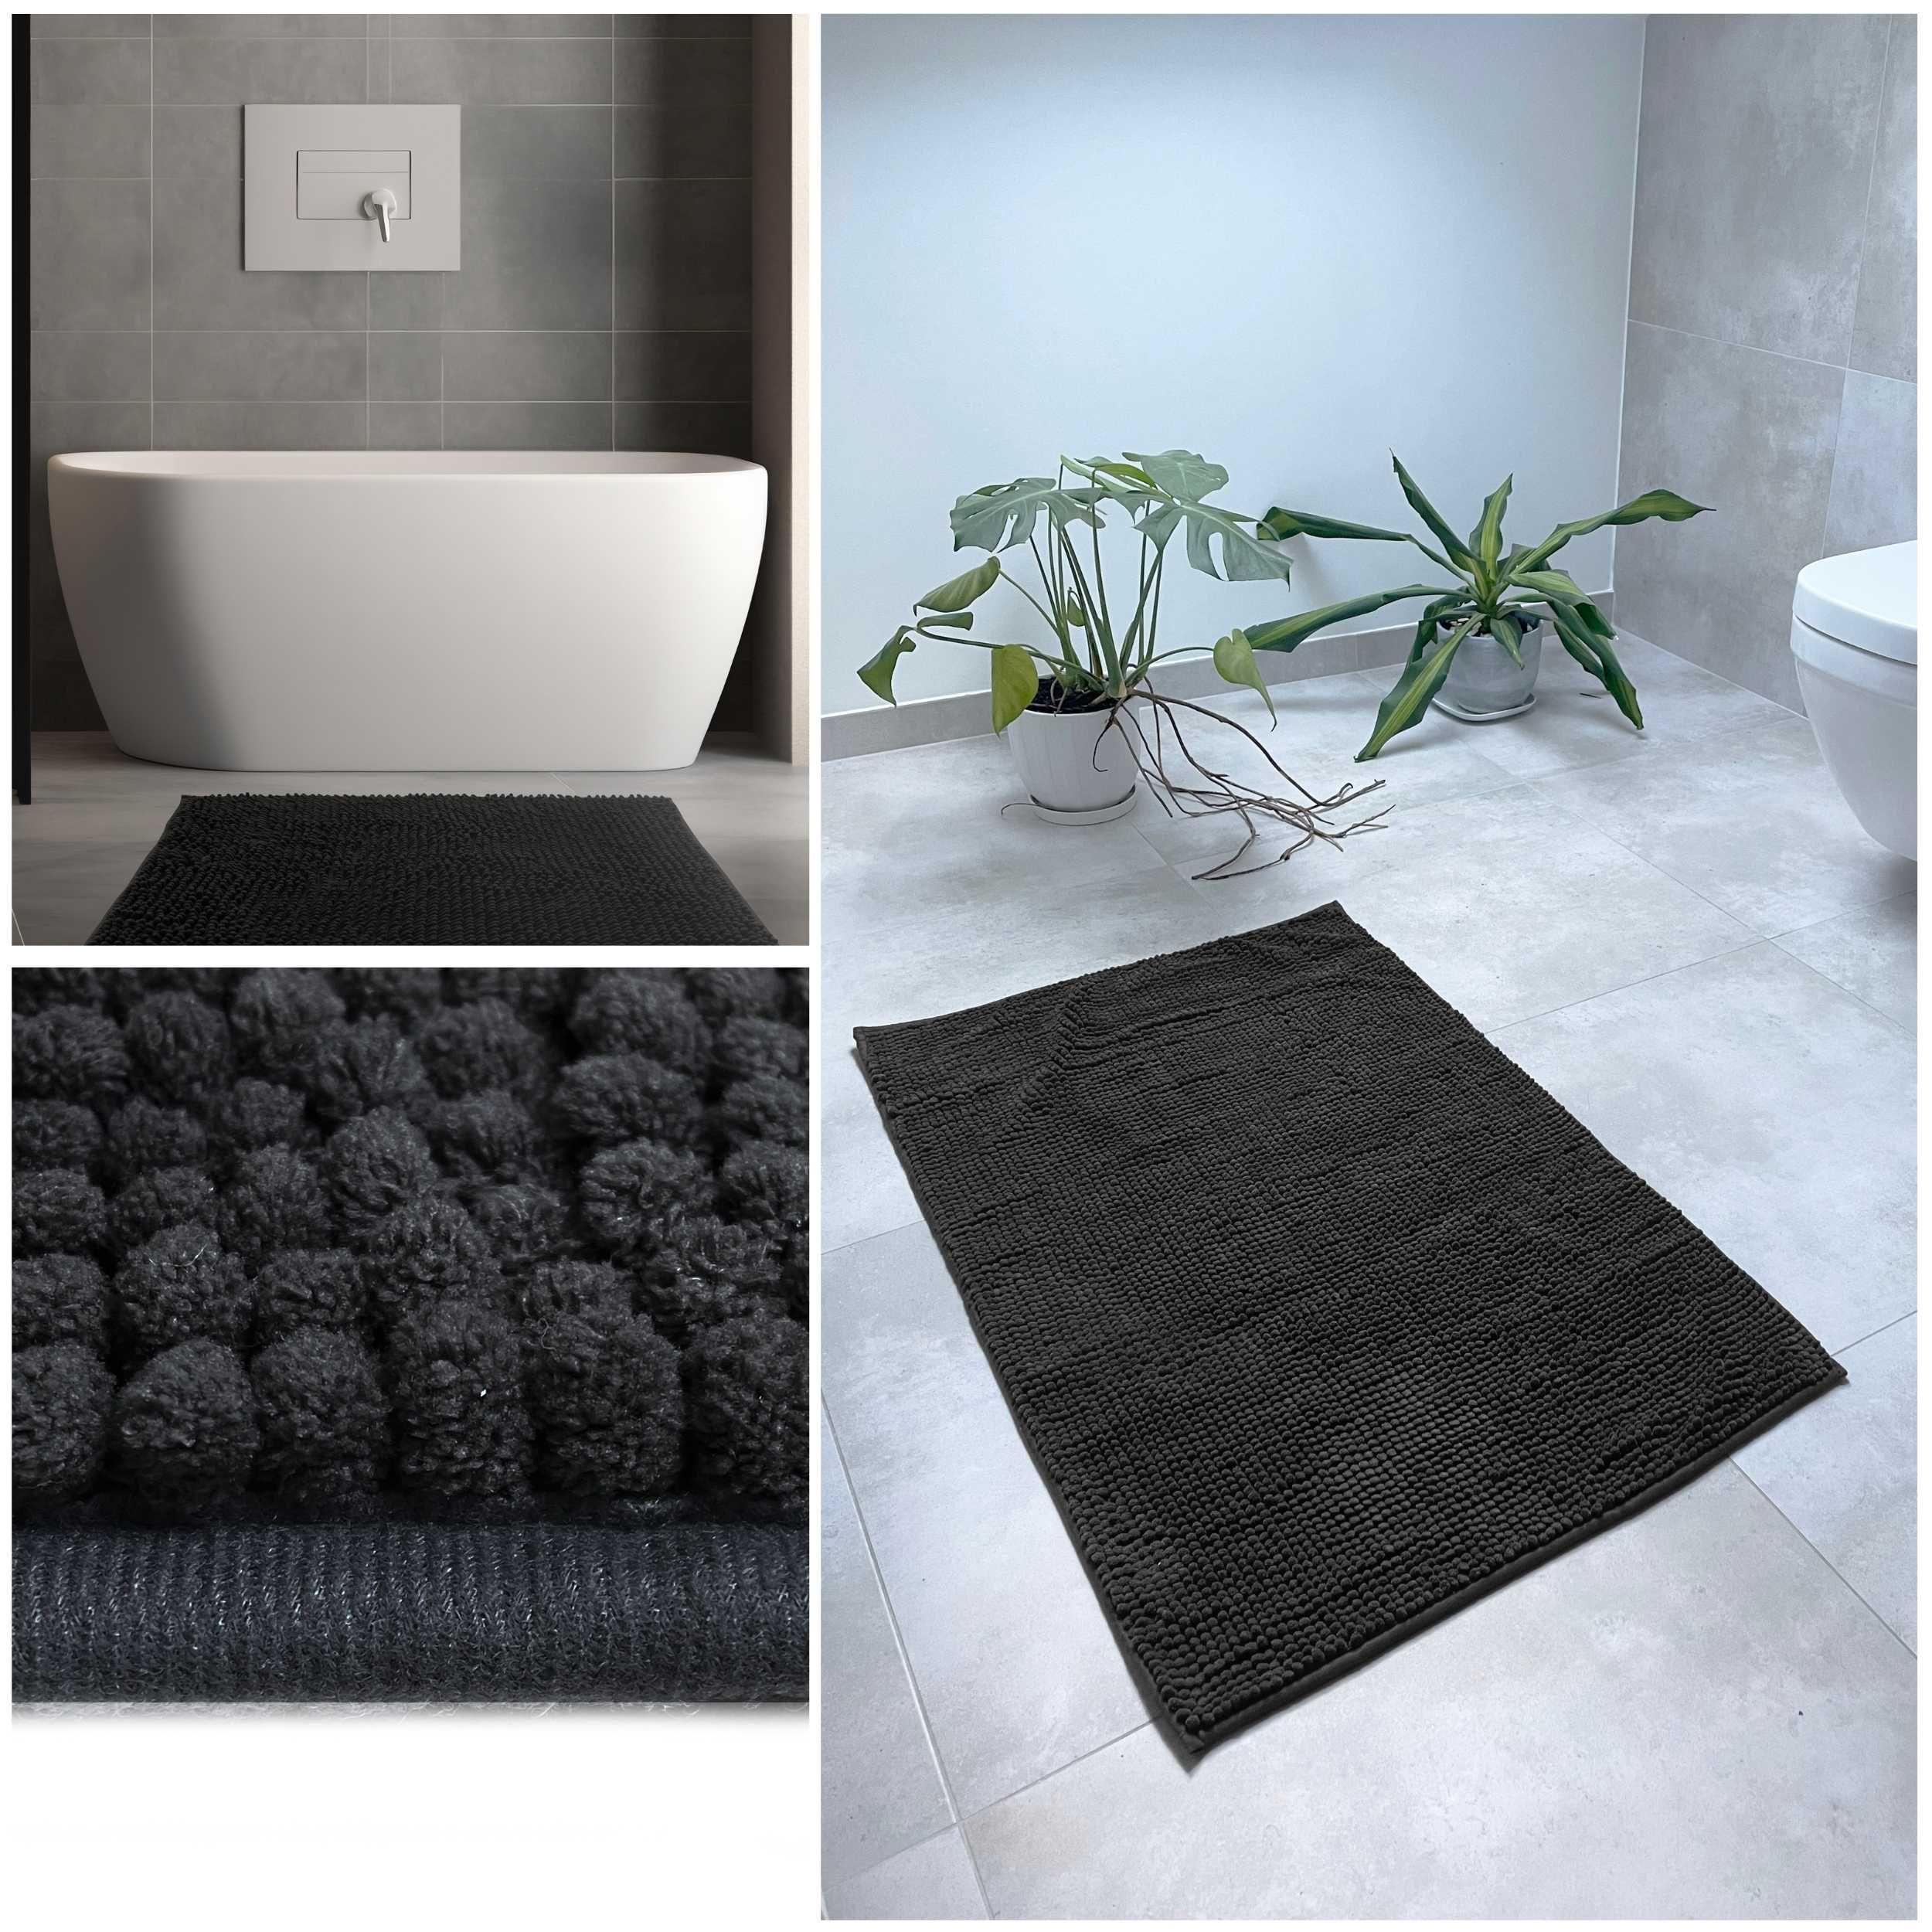 Dywanik łazienkowy dywan do łazienki pod toaletę wannę miękki 60x100cm